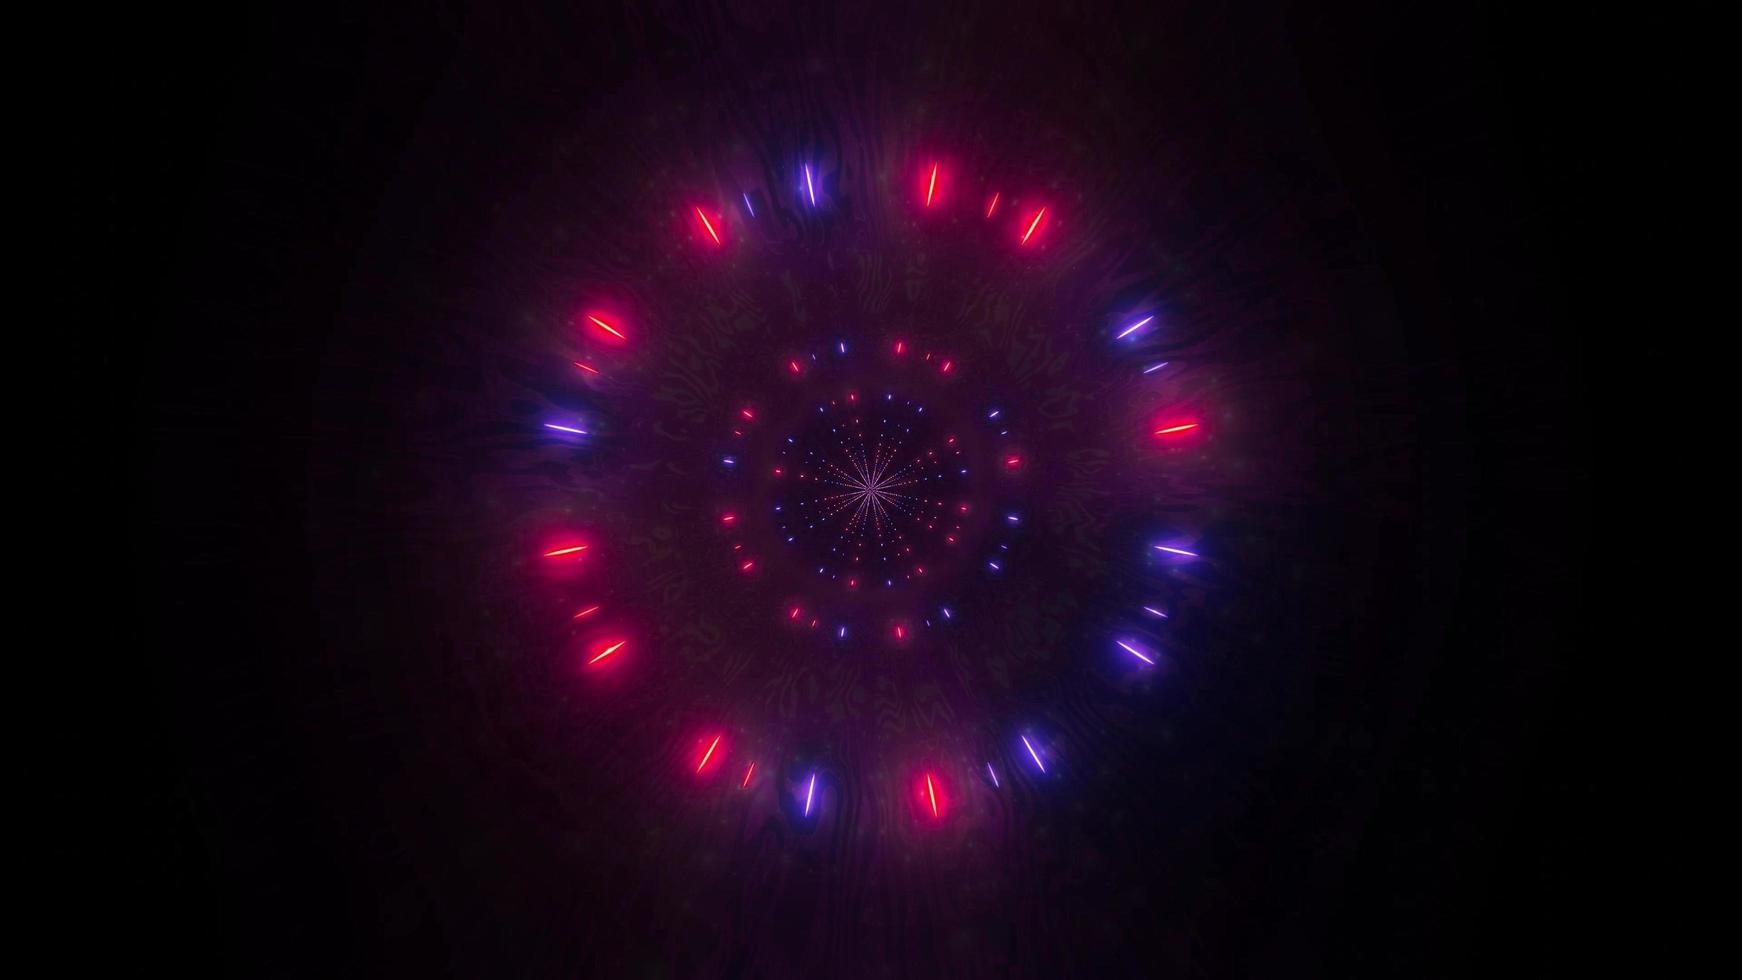 luz vermelha, azul, rosa e branca e ilustração 3D de formas do caleidoscópio para o fundo ou papel de parede foto